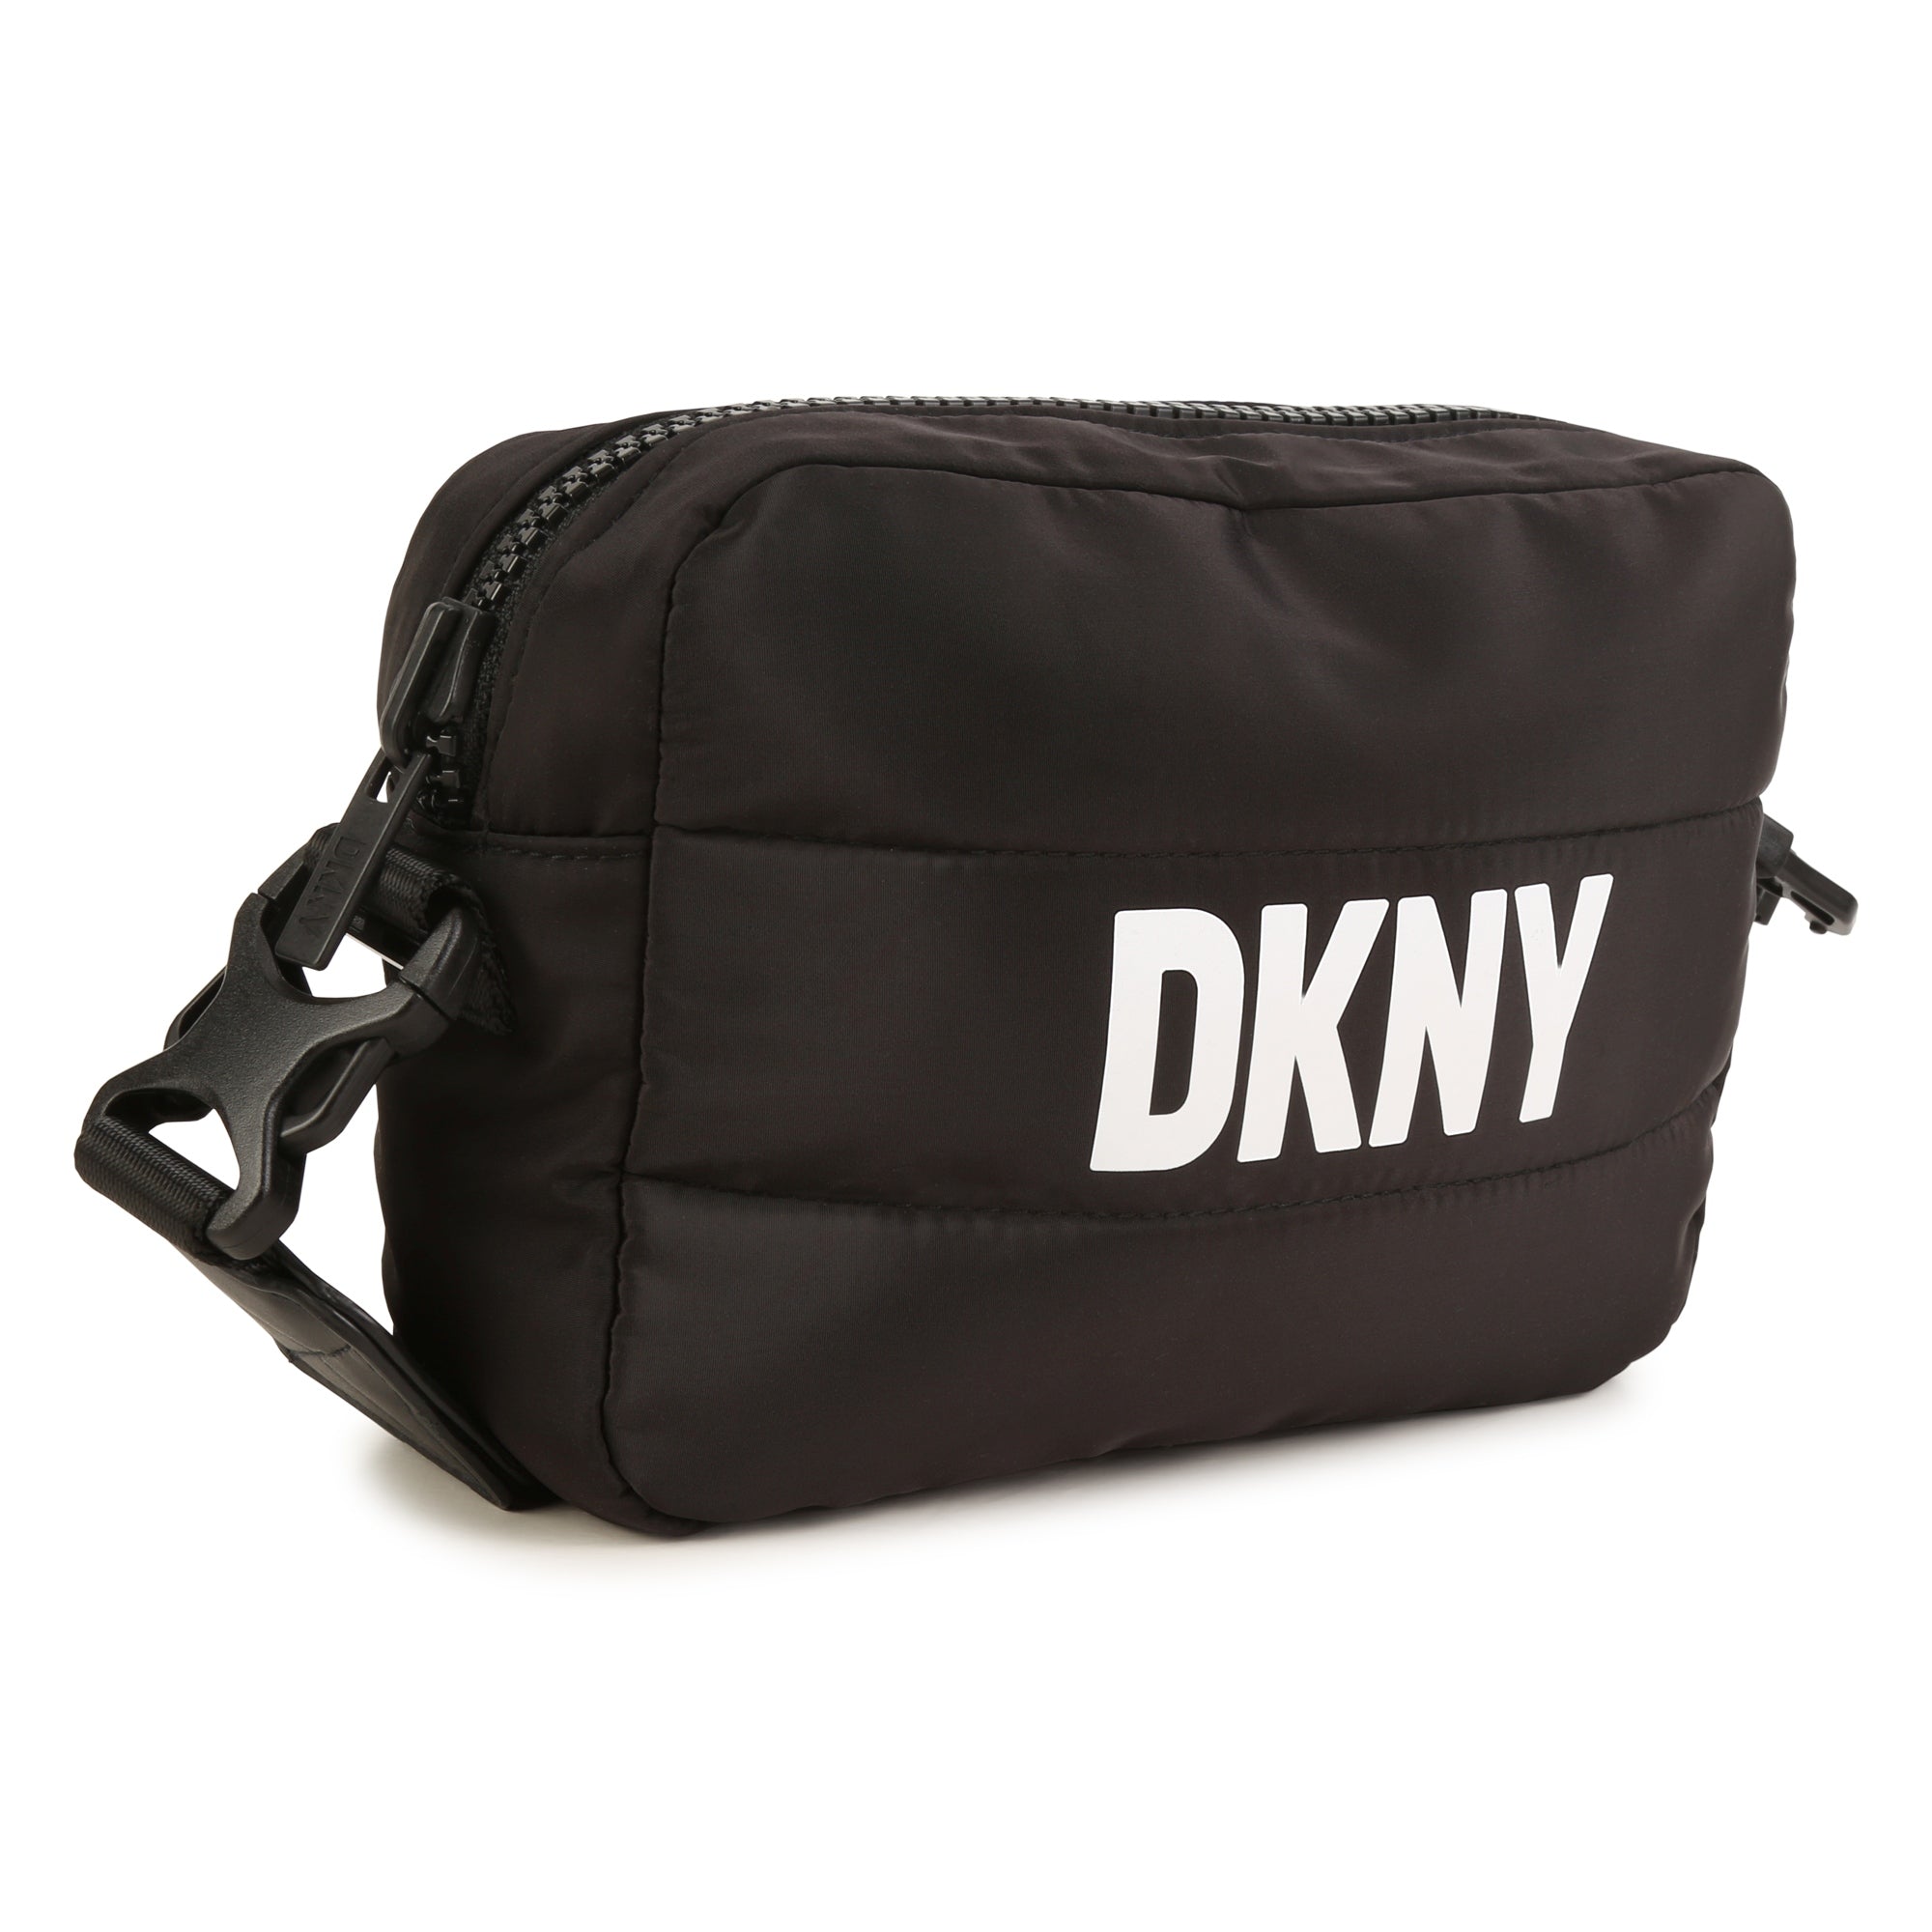 DKNY Small black canvas crossbody bag / clutch with croc pcv trim